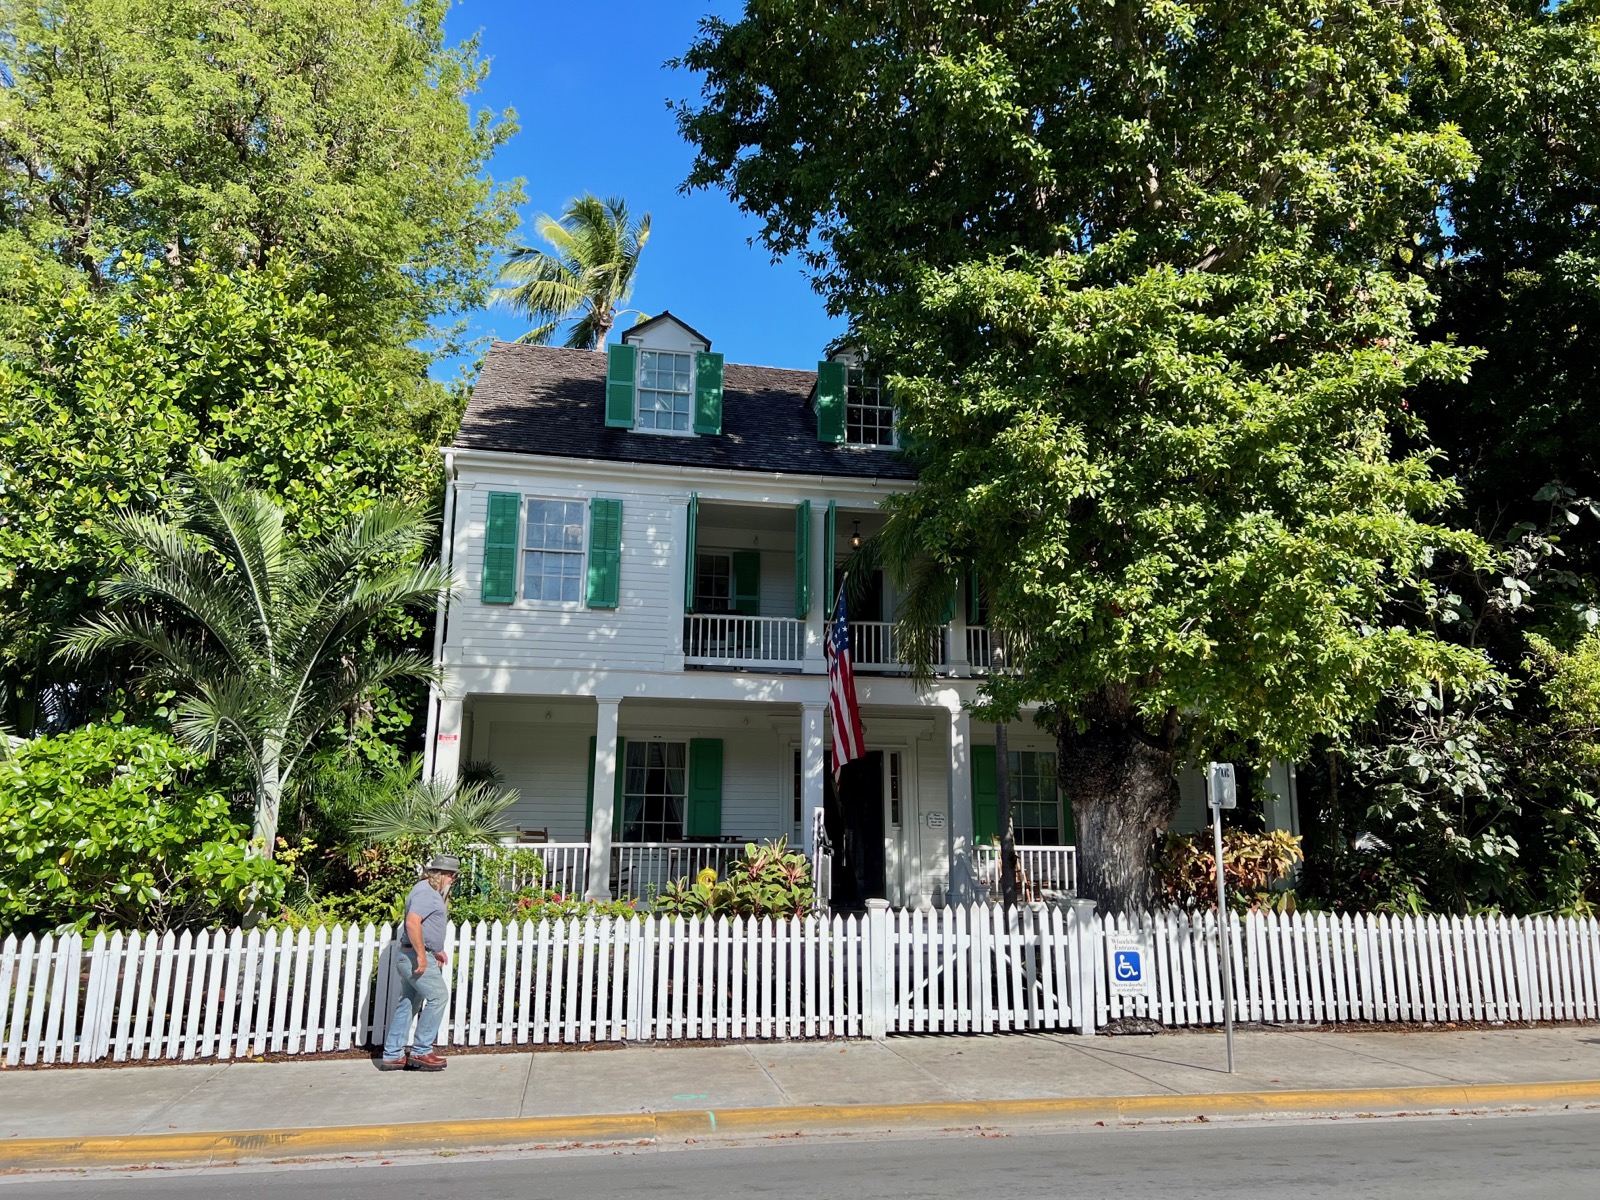 La Audubon House & Tropical Garden de Key West